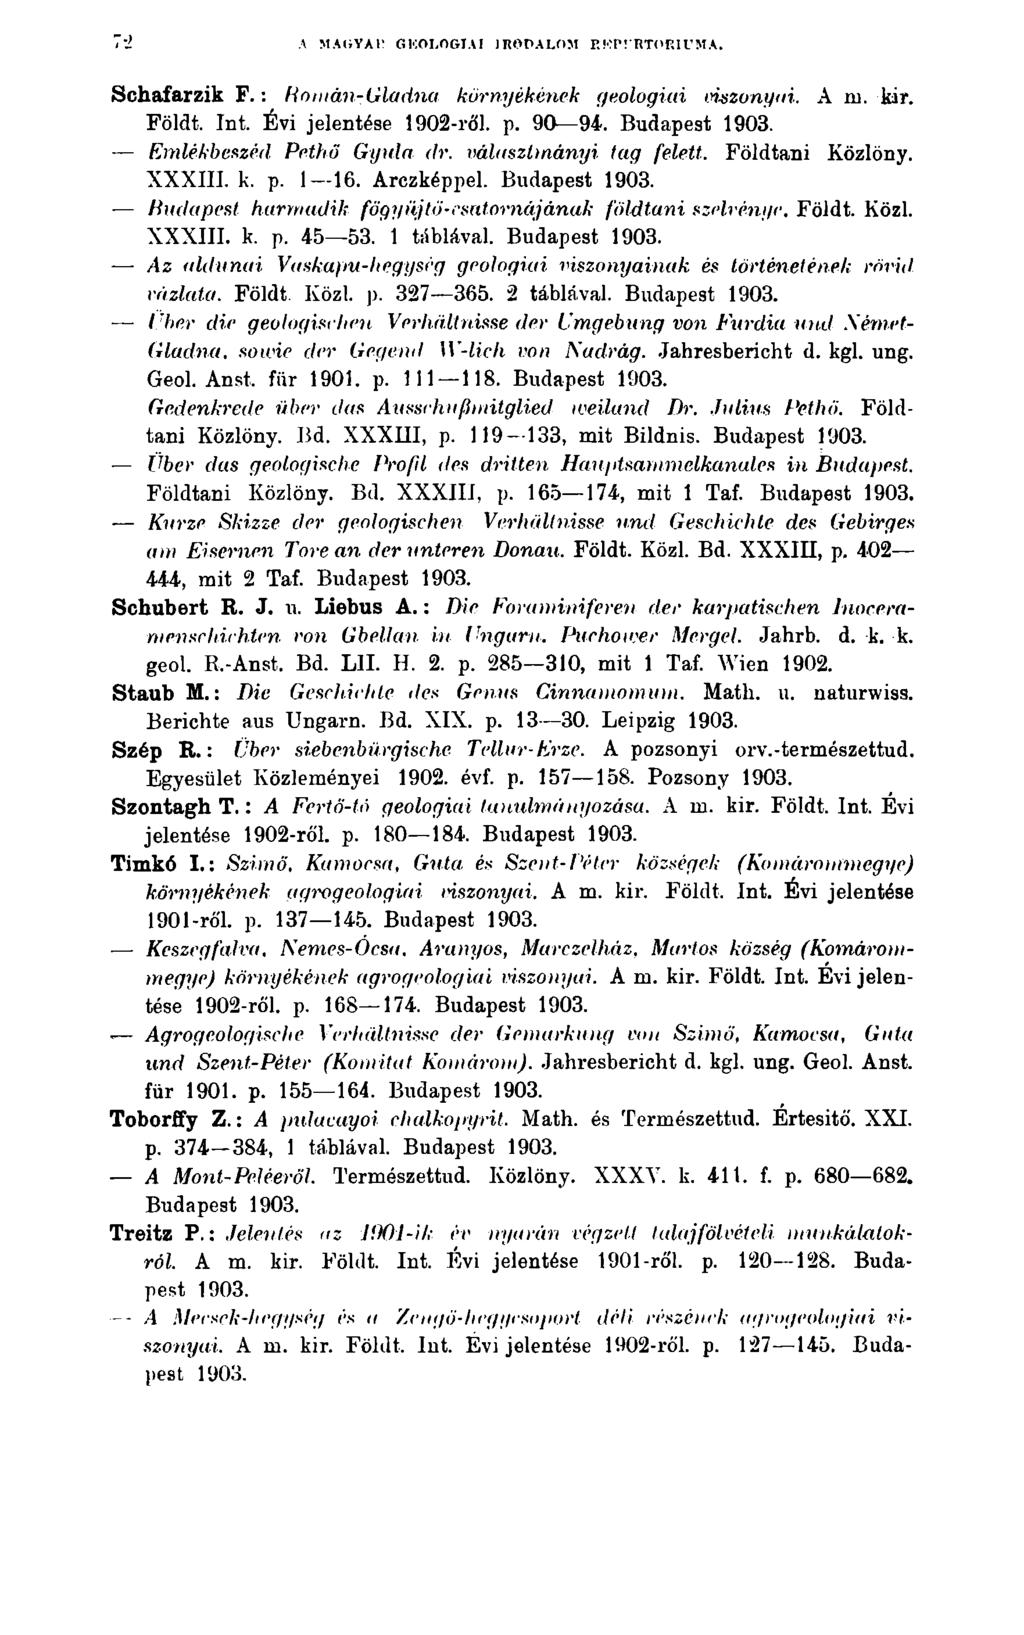 A MAGYAl! GKOLOGIAI JROPALOM R.'OP! RTOP.IUMA. Schafarzik F.: Homán-Gladna környékének geologiai viszonyai. A ni. kir. Földt. Int. Évi jelentése 1902-ről. p. 90 94.